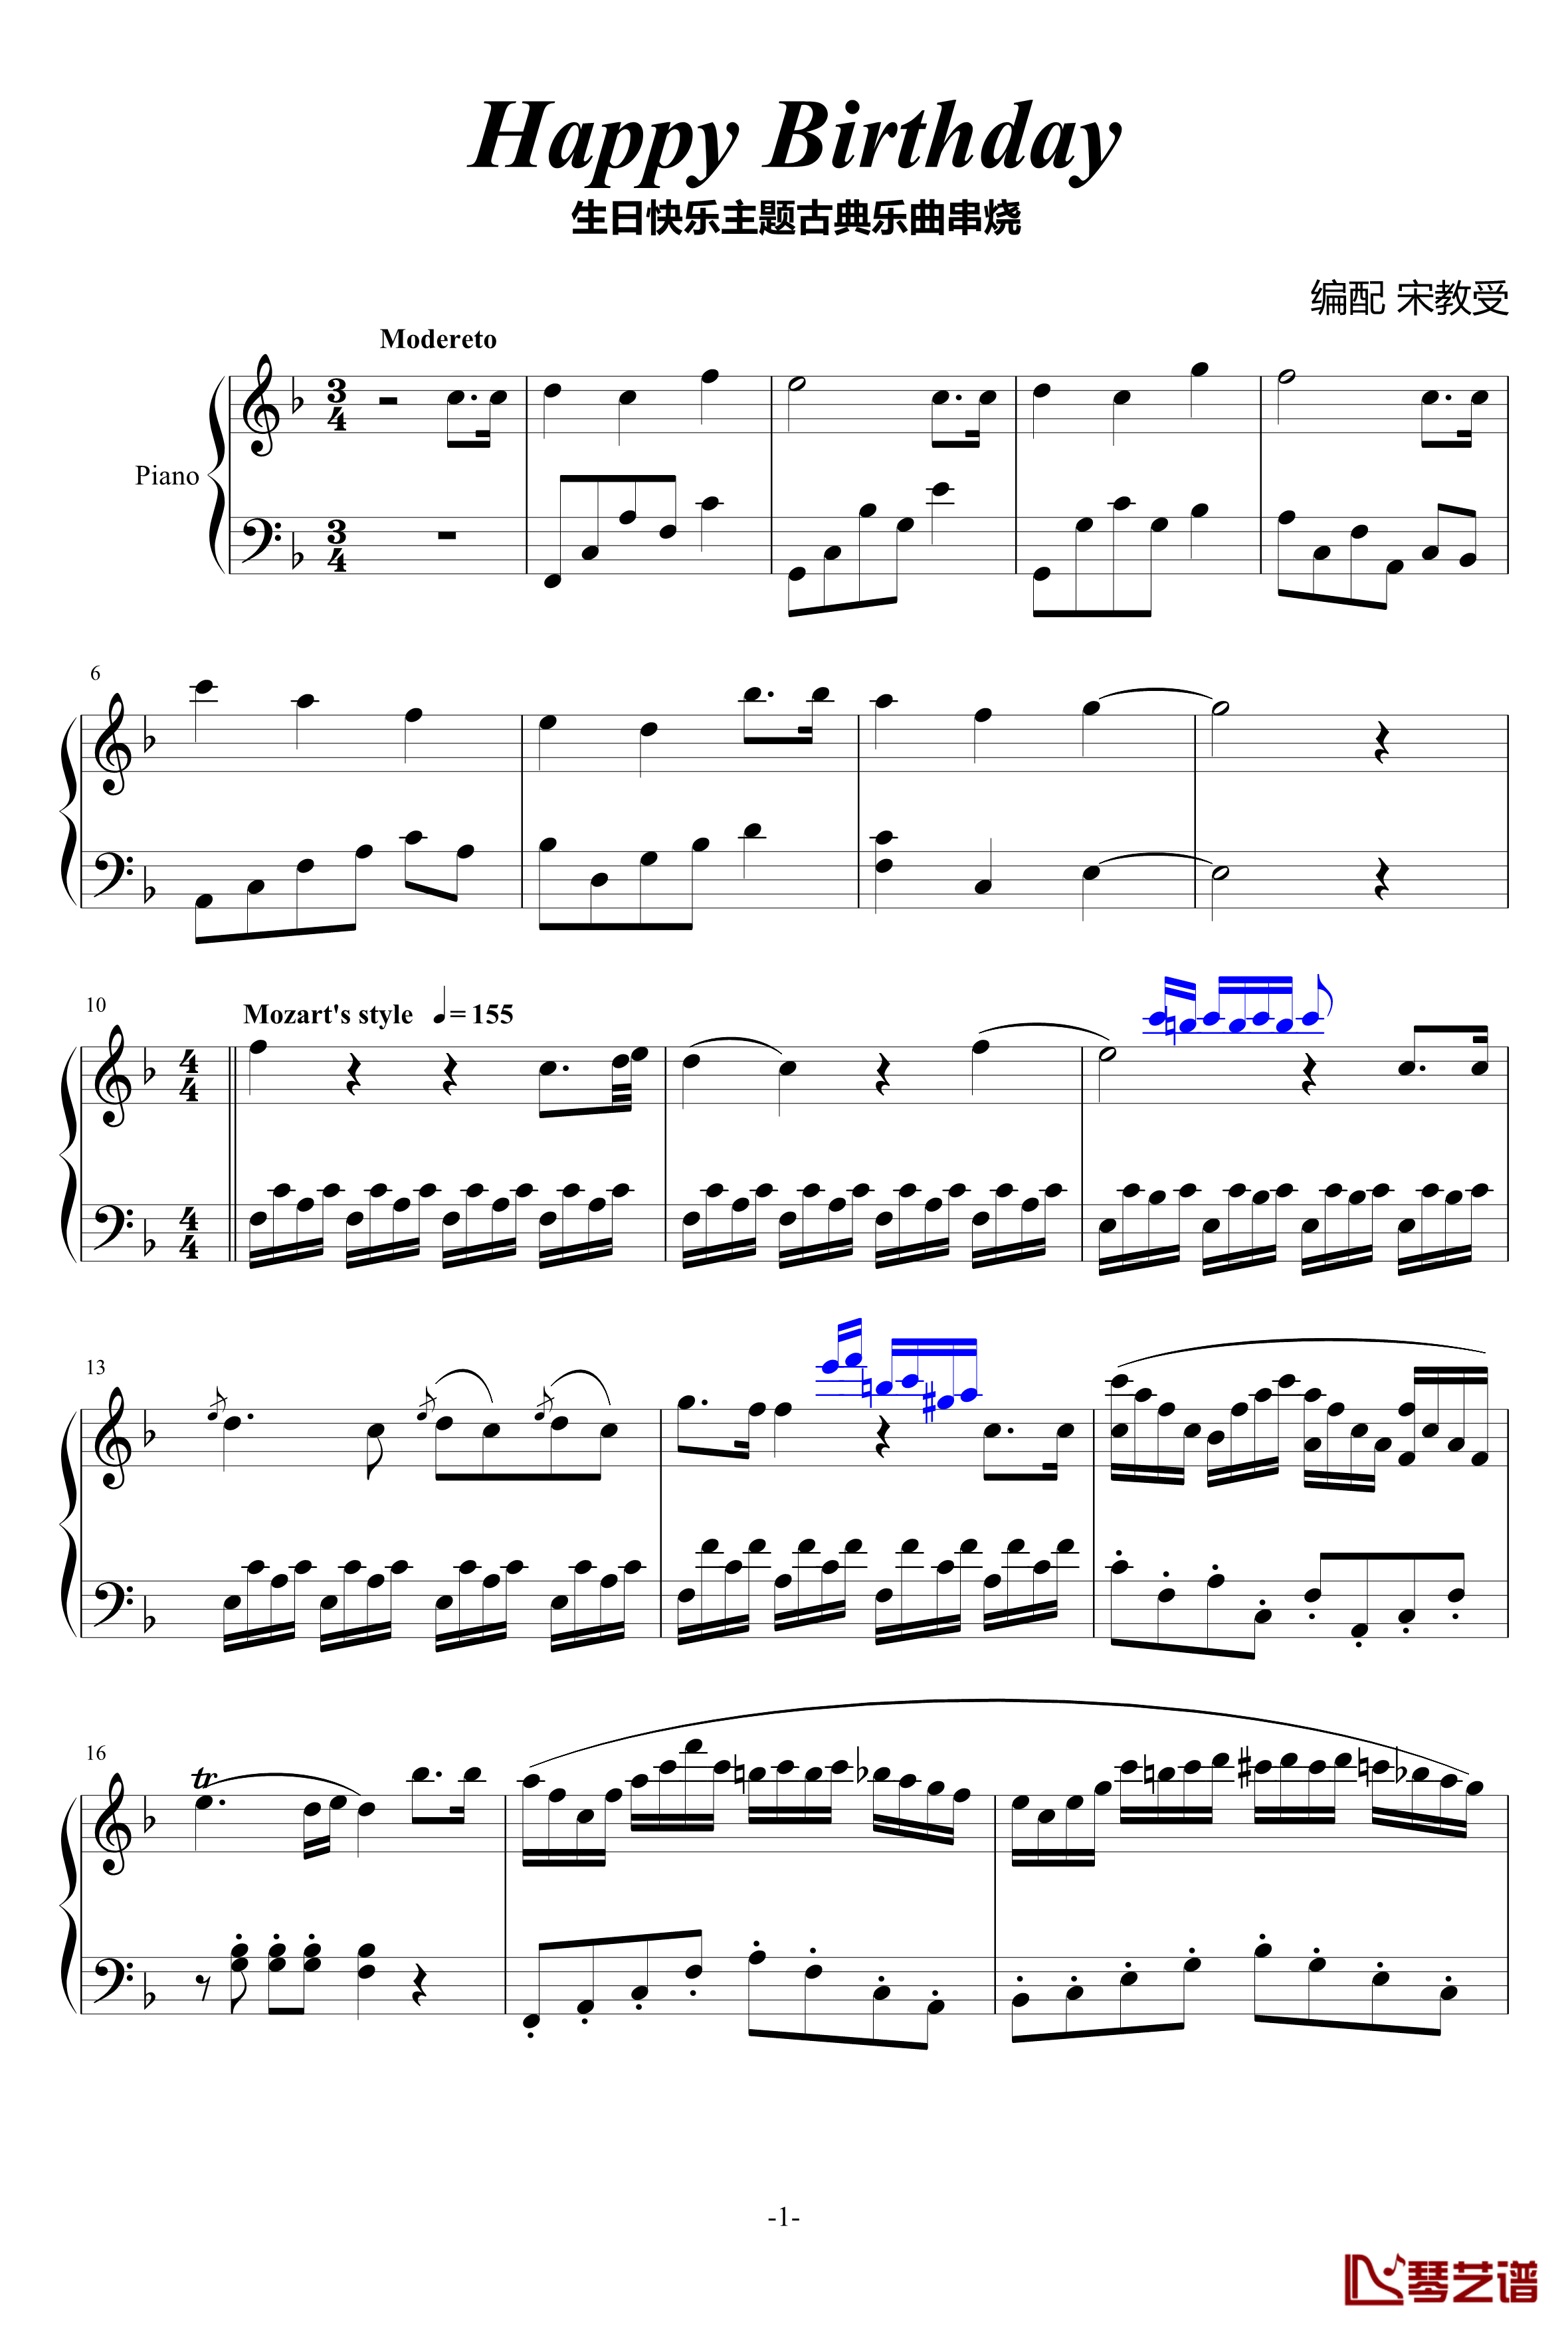 生日快乐钢琴谱-改进版-主题古典钢琴串烧-宋叫受1